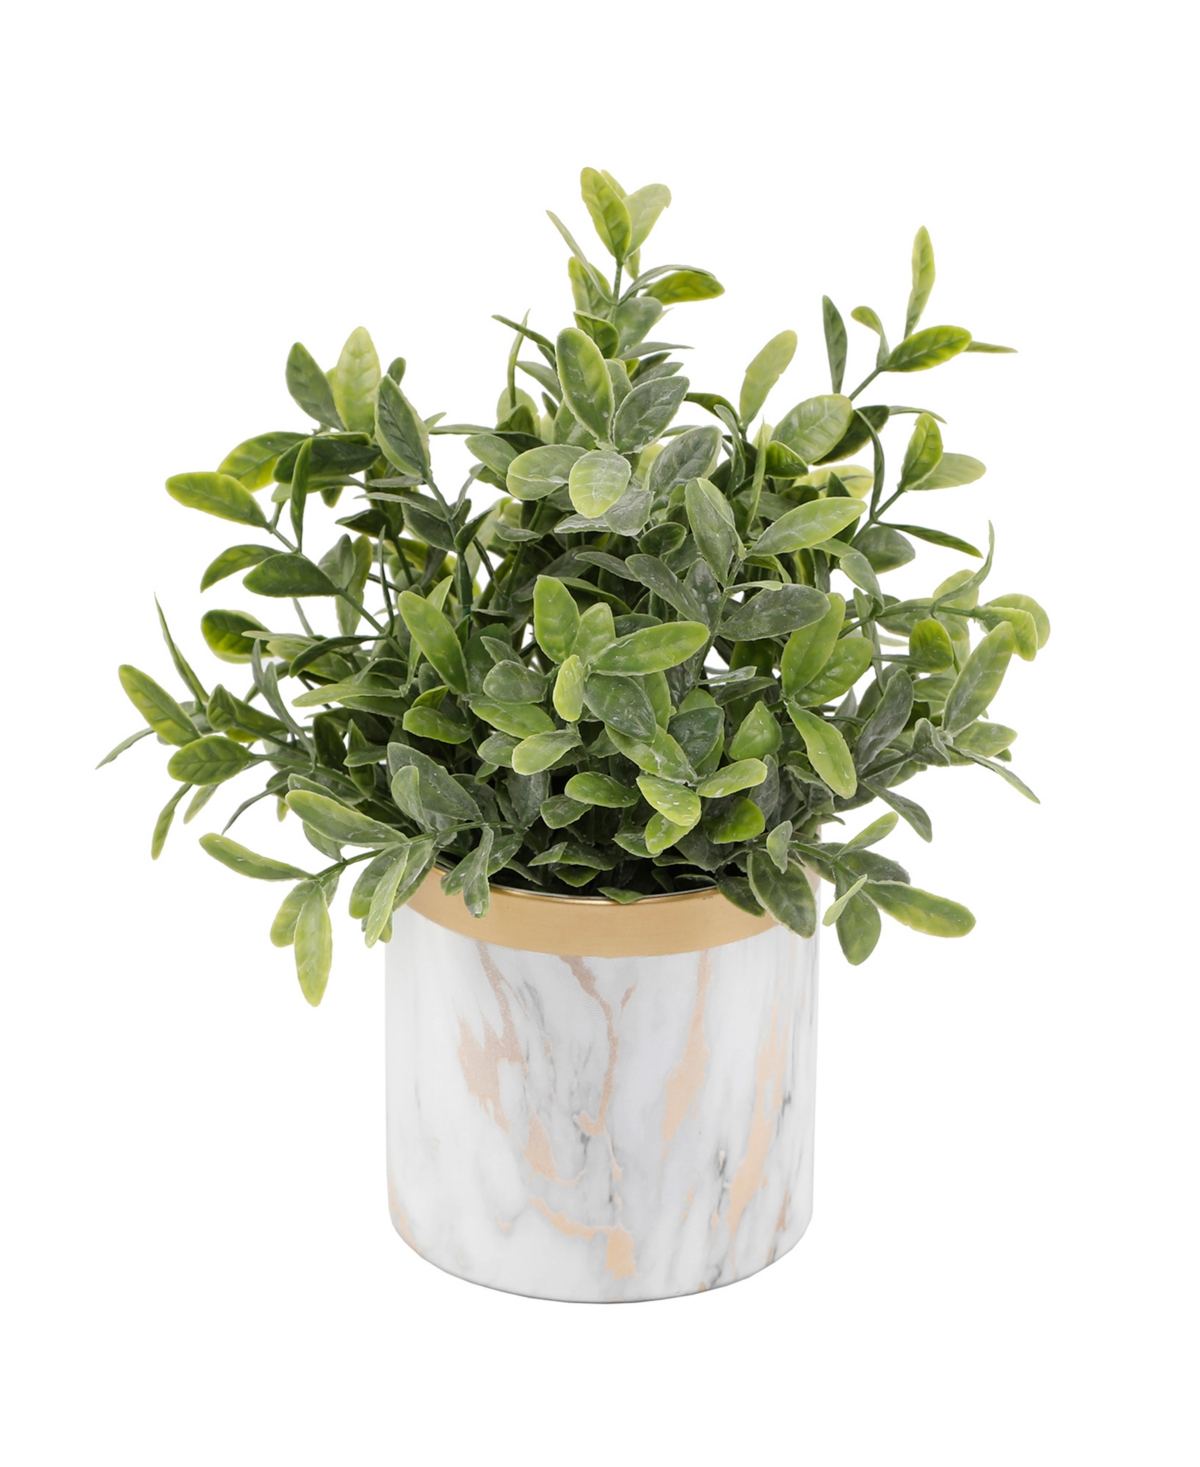 Tea Leaf in Ceramic Pot, 4.5" - White, Gold-Tone